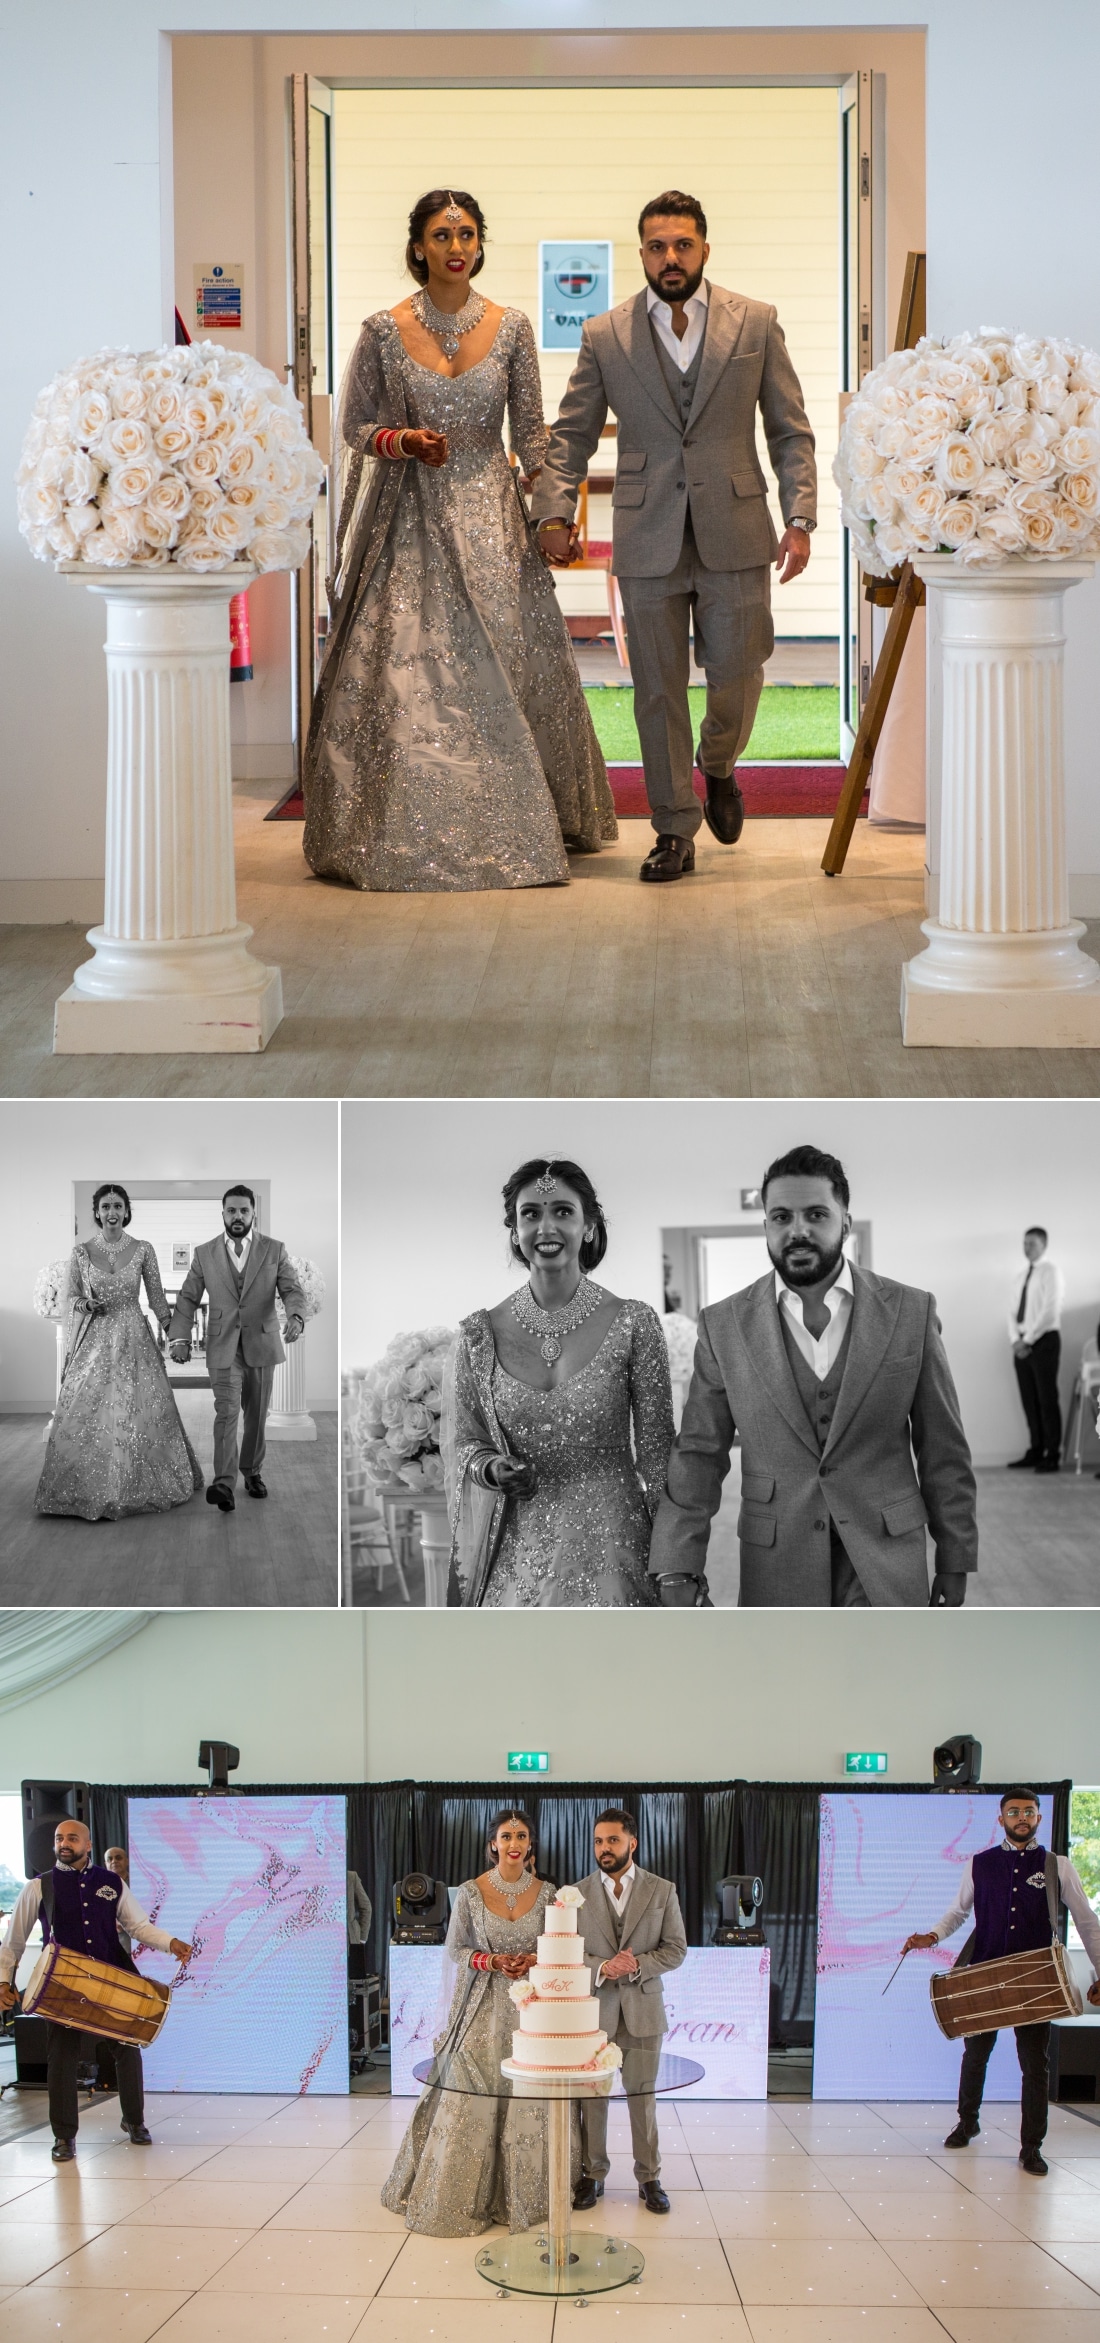 Sikh wedding photography at Dallas Barston Amandeep and Kiranjeet 17